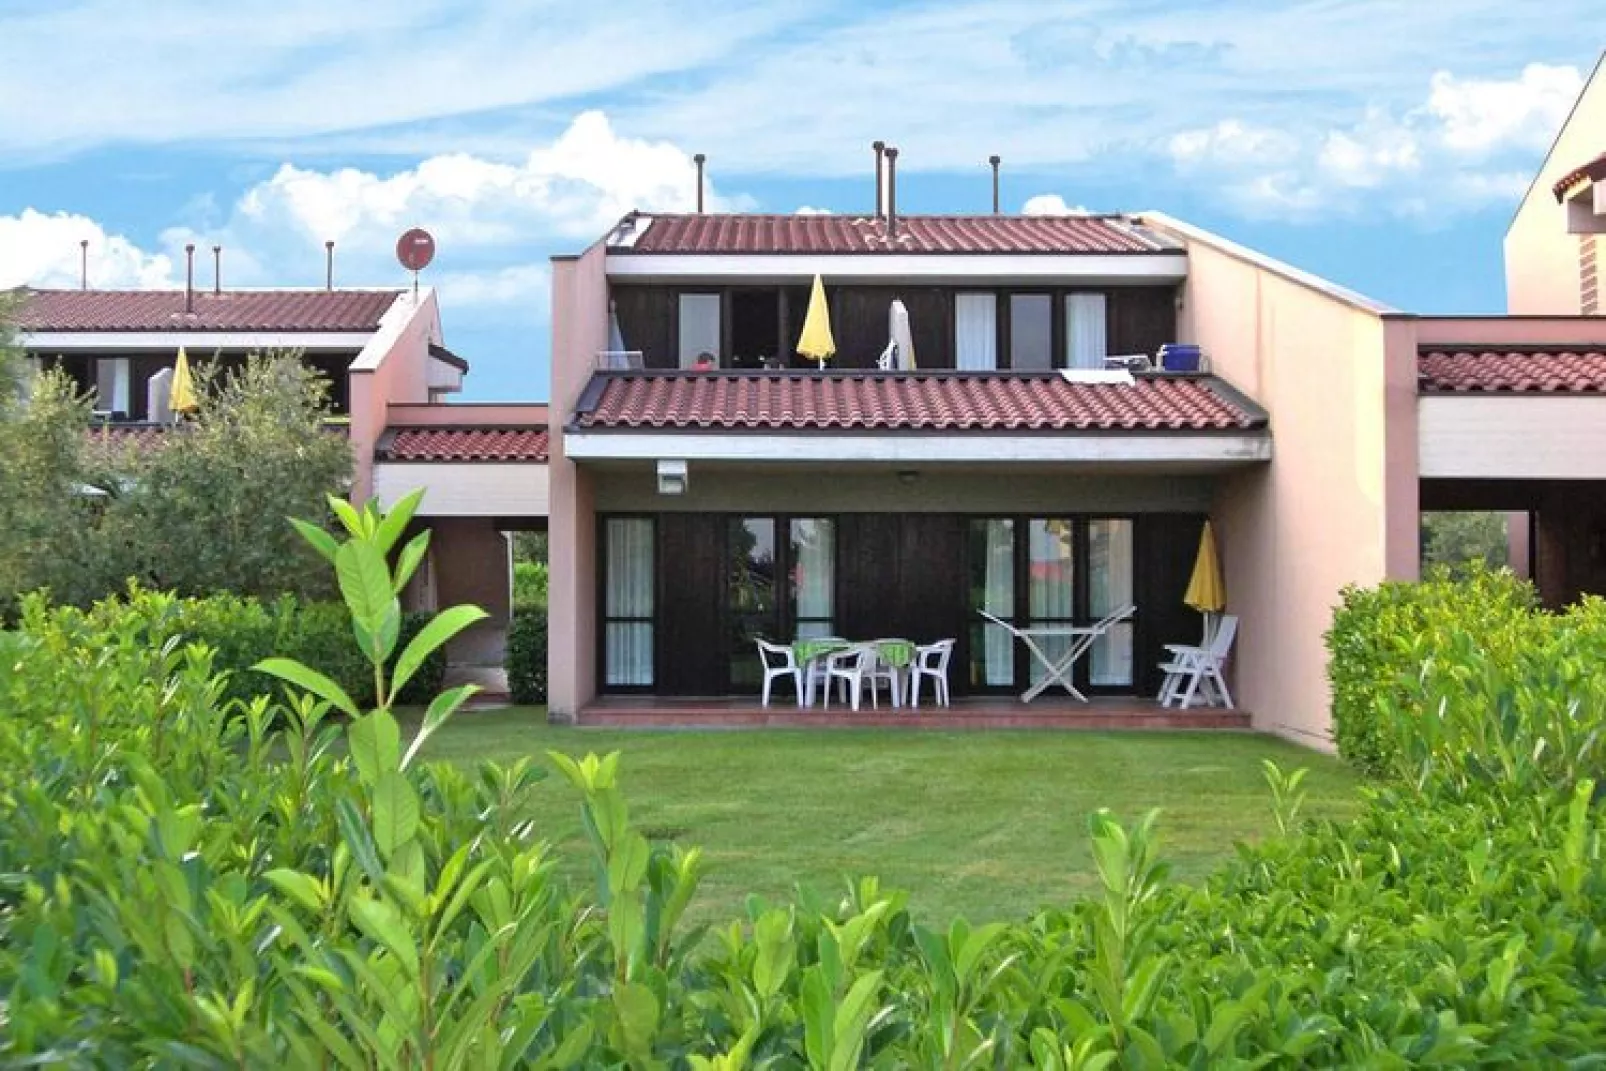 Residence Barbara, Moniga del Garda-2-Raum-App., 1. Etage B2G, ca. 44 qm